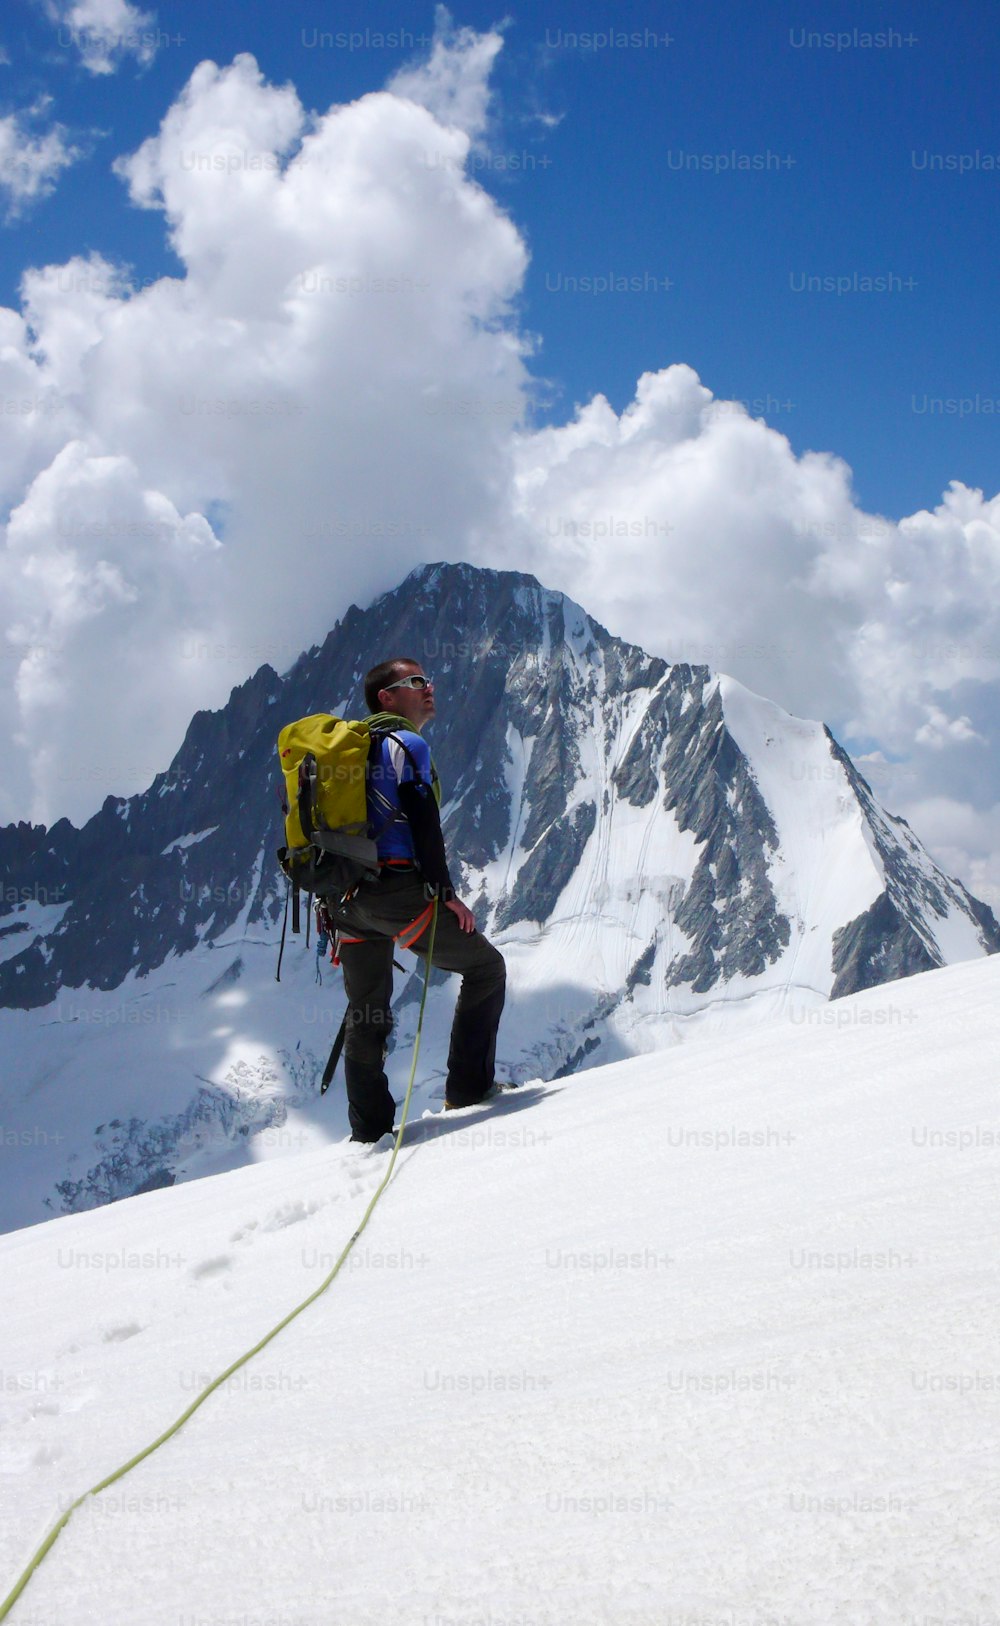 alpinista macho olha para o cume e seu objetivo enquanto está de pé em uma geleira alpina alta nos Alpes suíços abaixo do Loetschentaler Breithorn